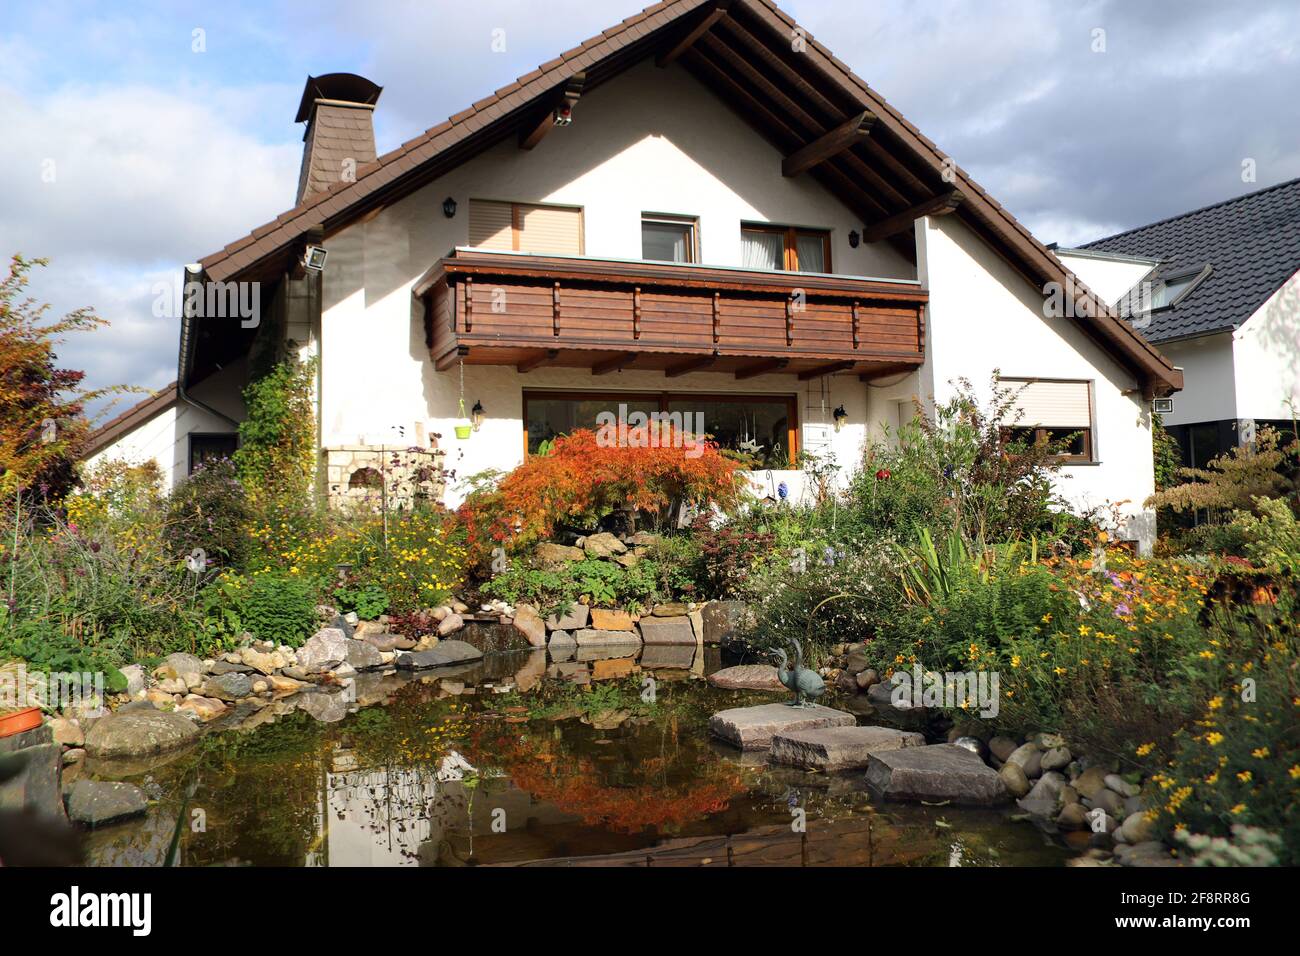 casa con jardín y estanque en otoño, Alemania, Renania del Norte-Westfalia Foto de stock